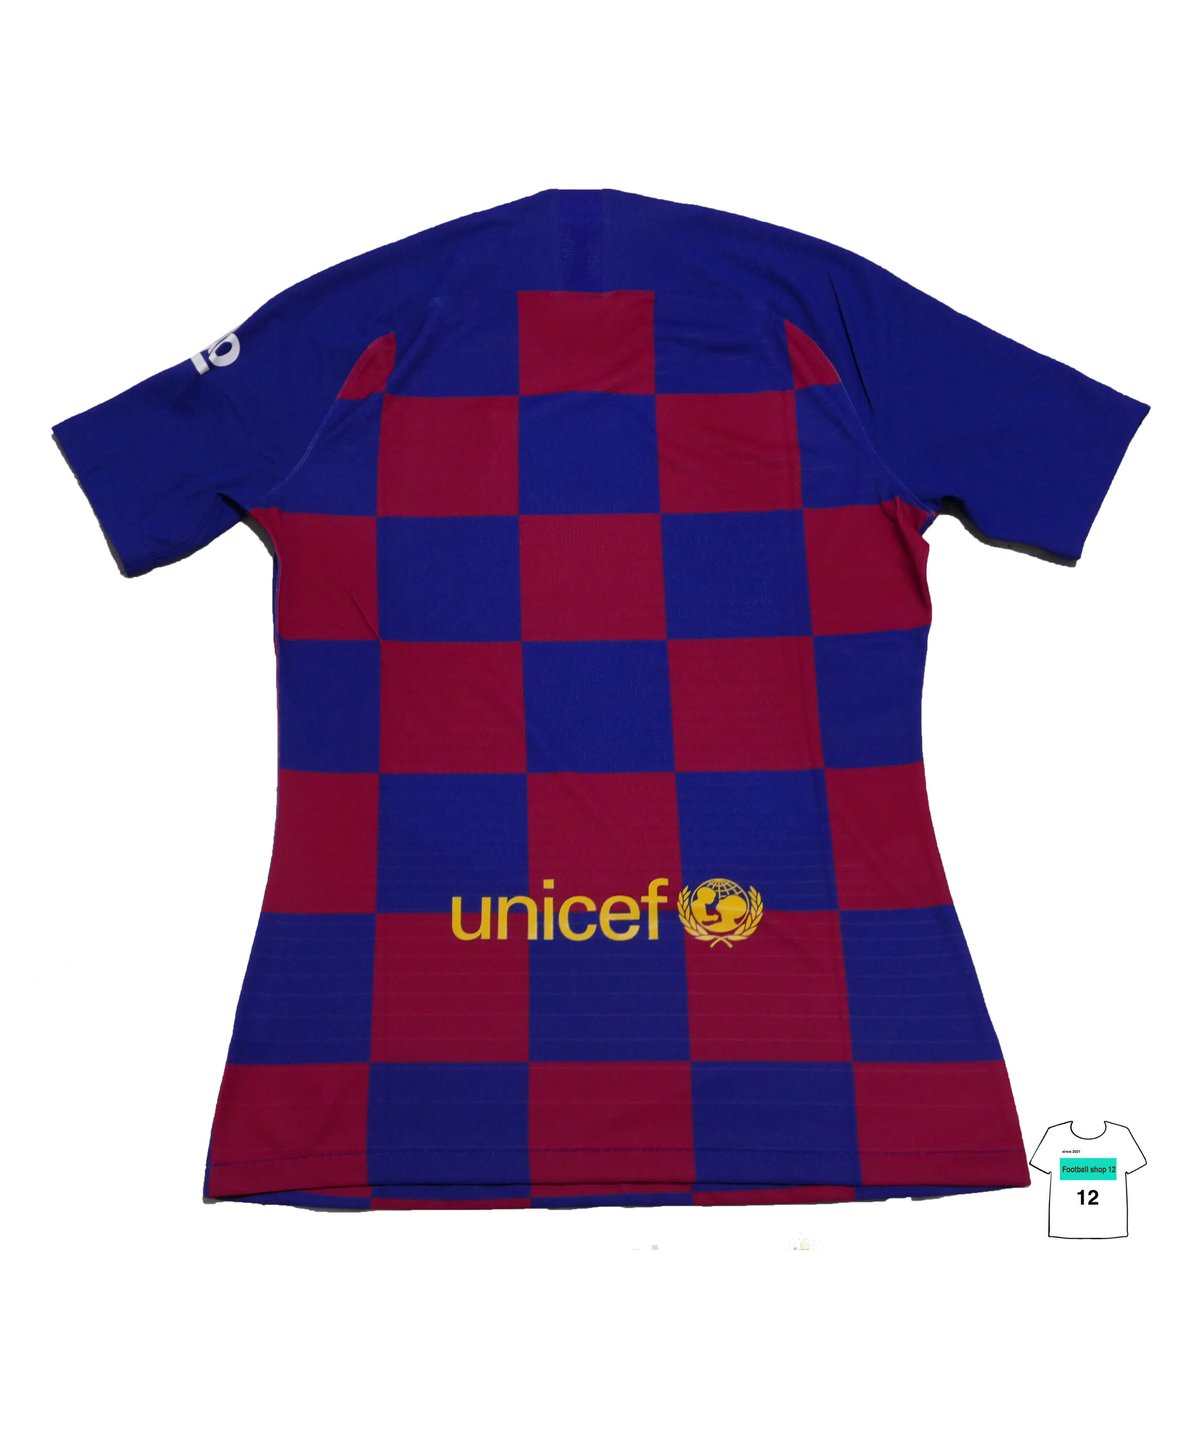 NIKE 19/20 FCバルセロナ ホーム支給ユニフォーム | Football shop 12